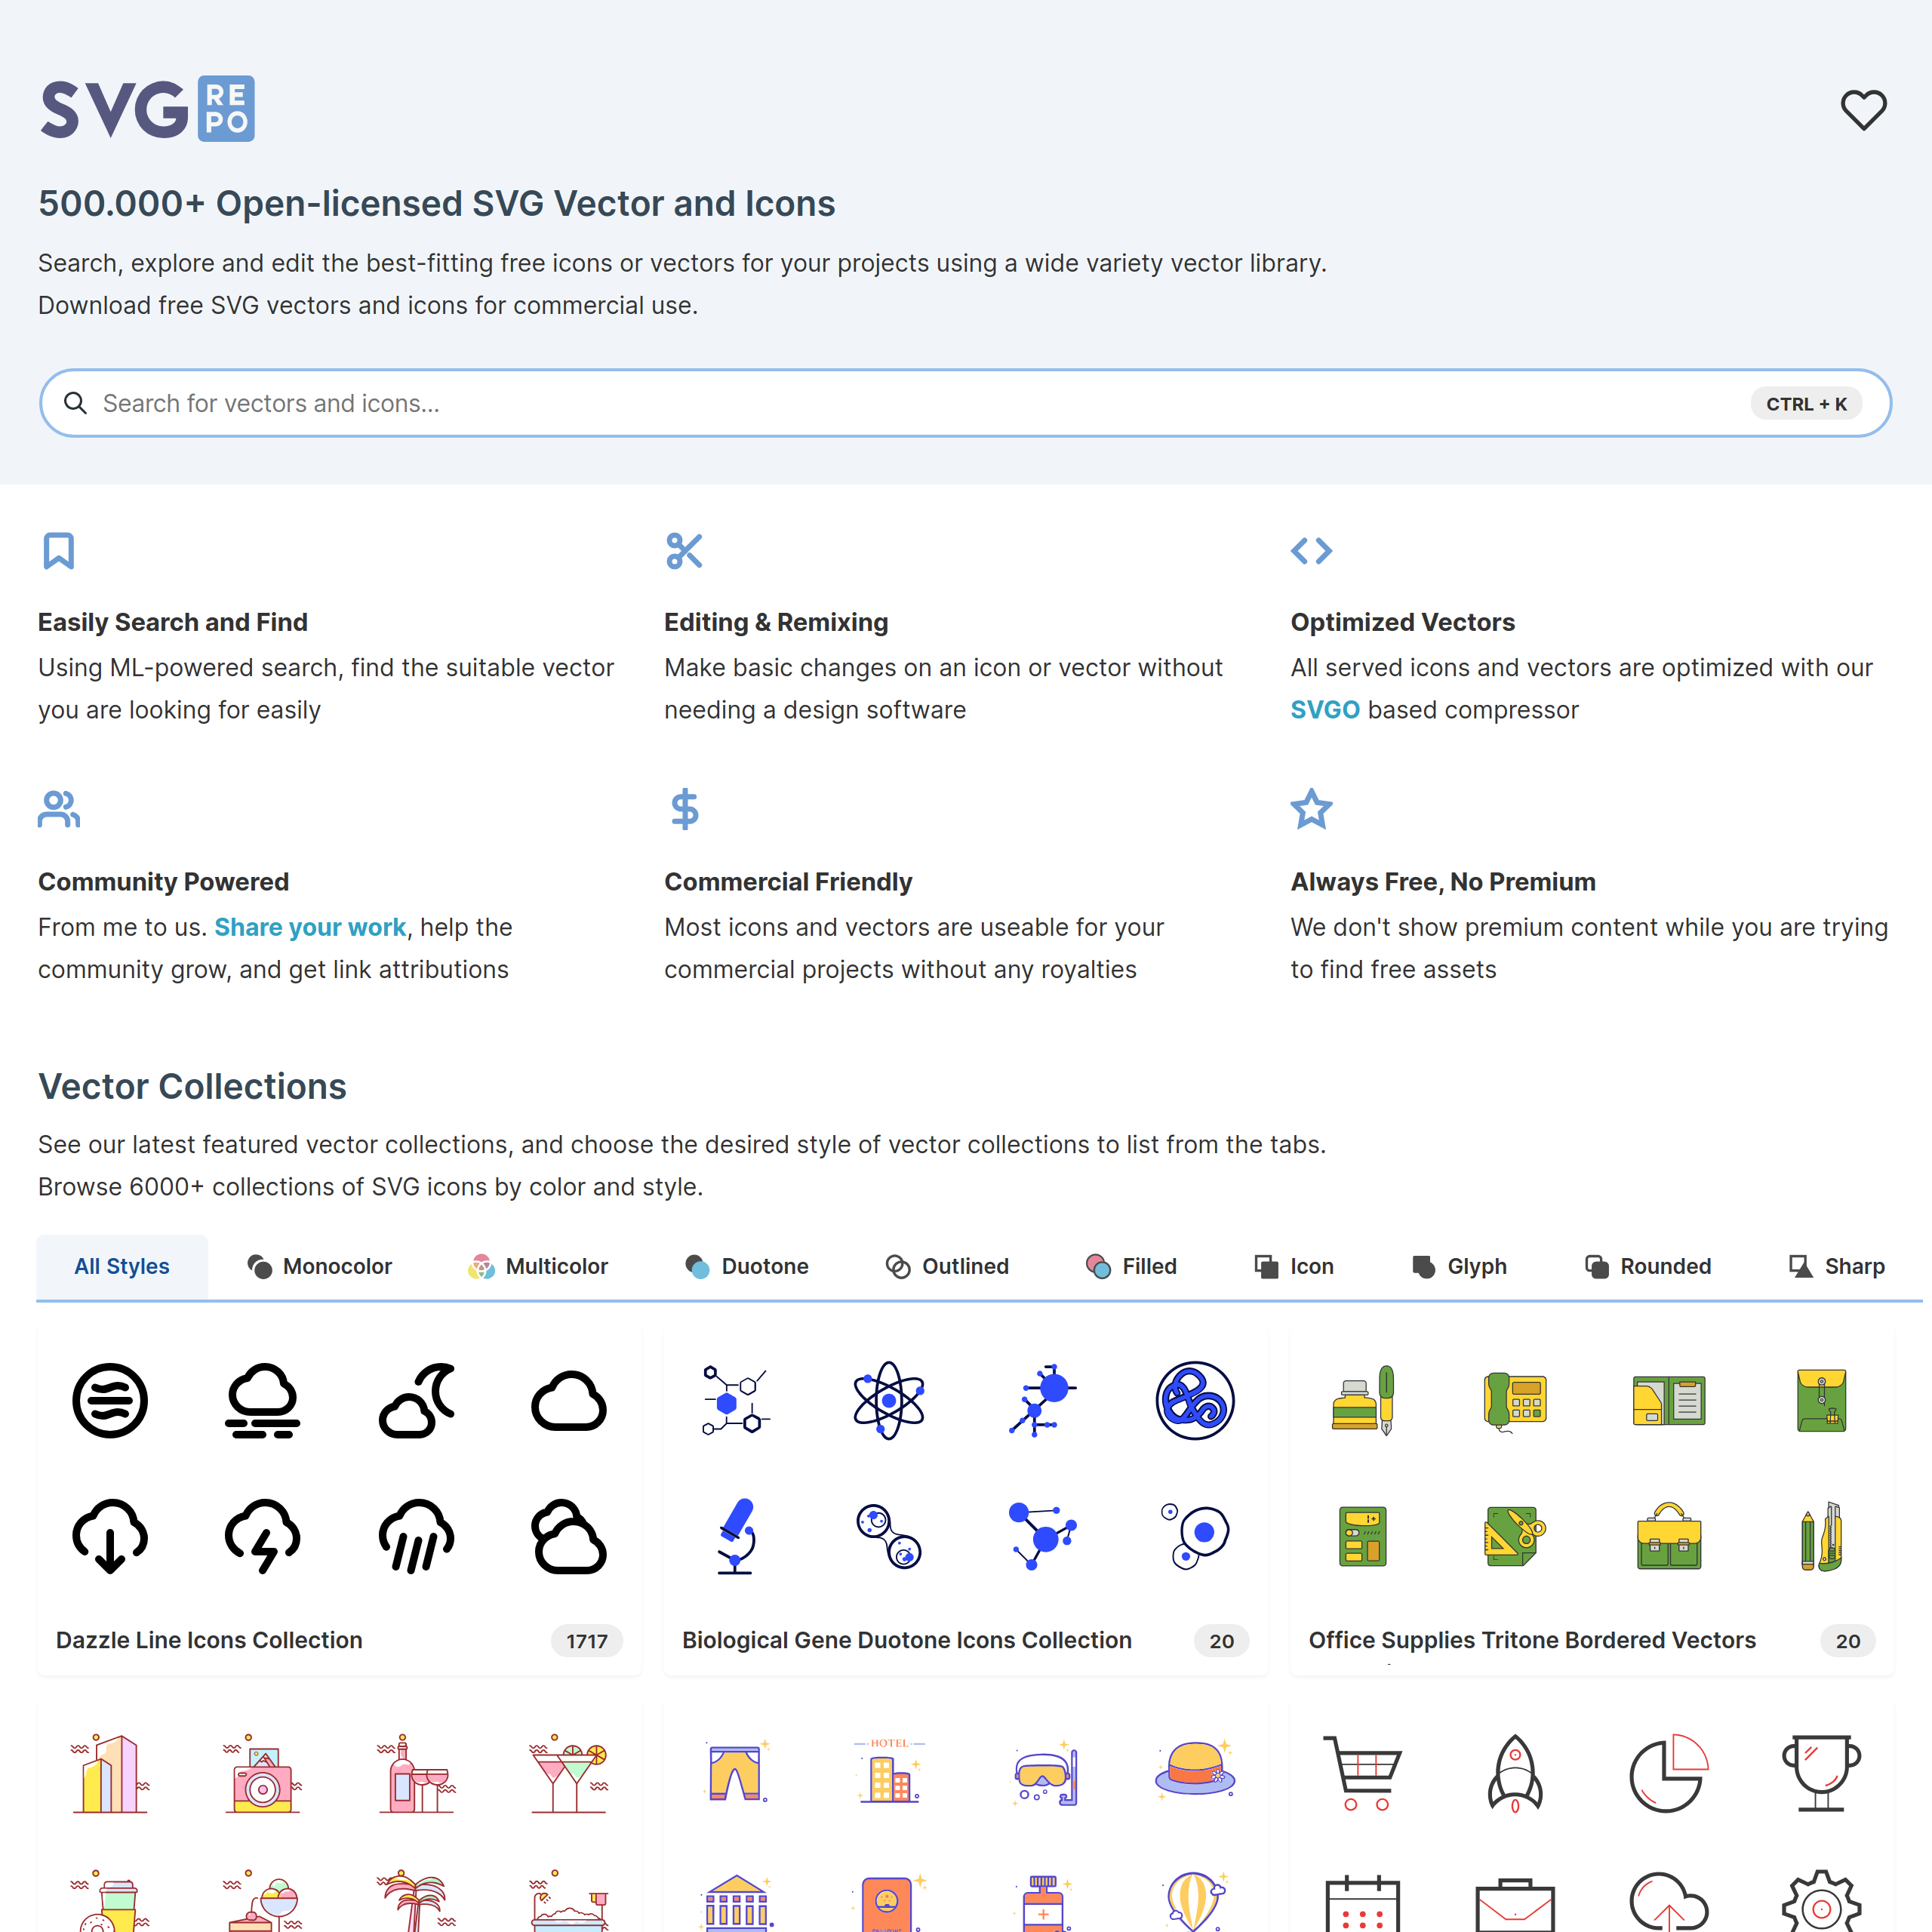 Safemoon Vector SVG Icon (2) - SVG Repo